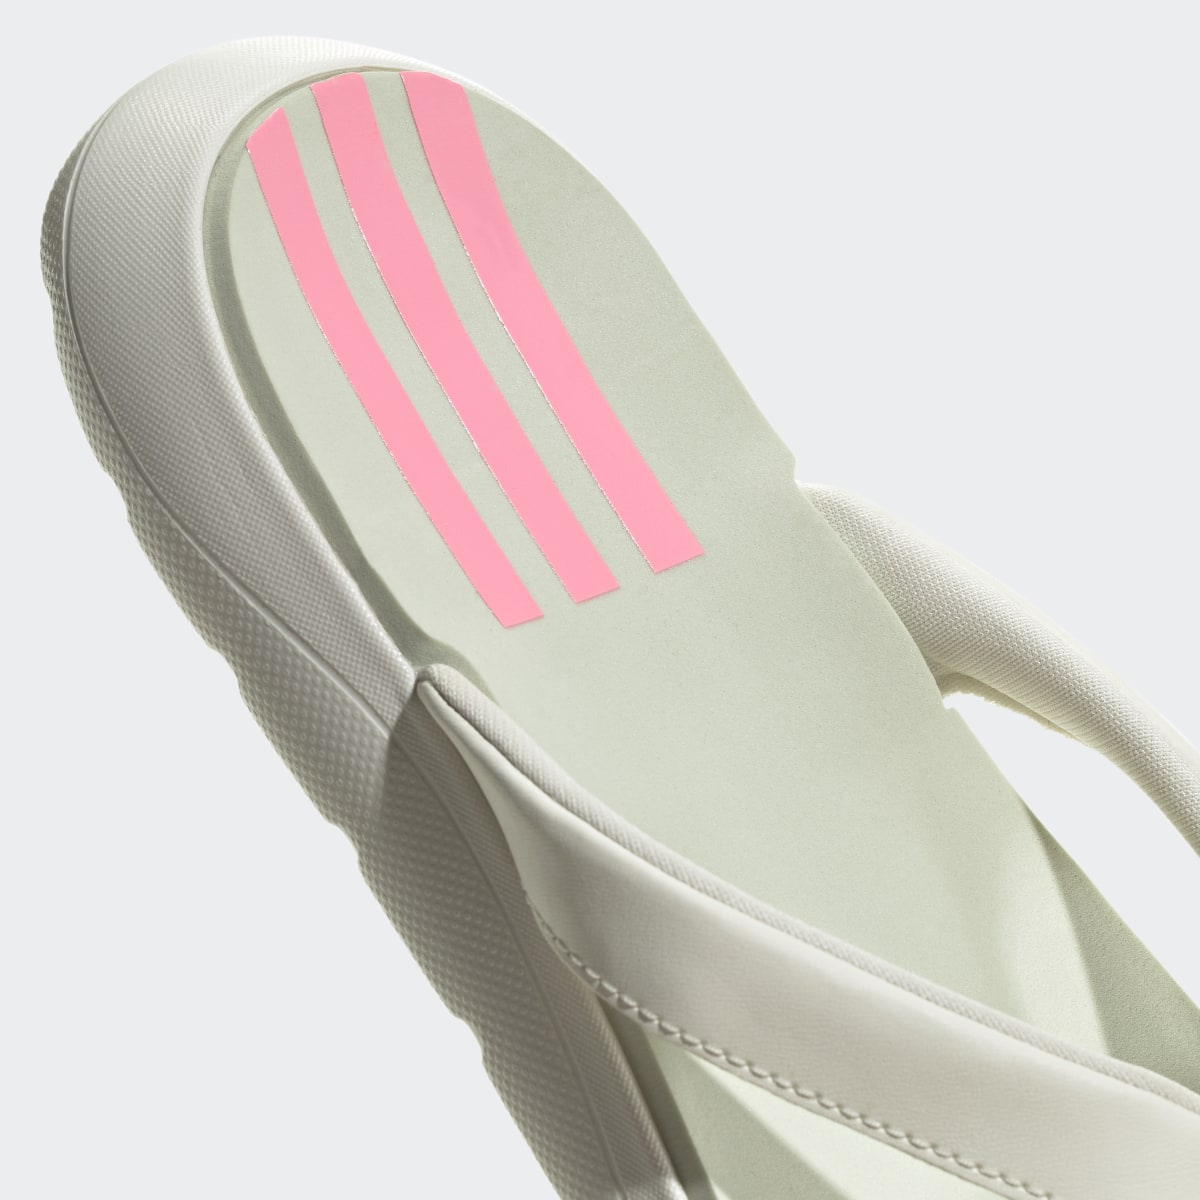 Adidas Claquette Comfort. 10